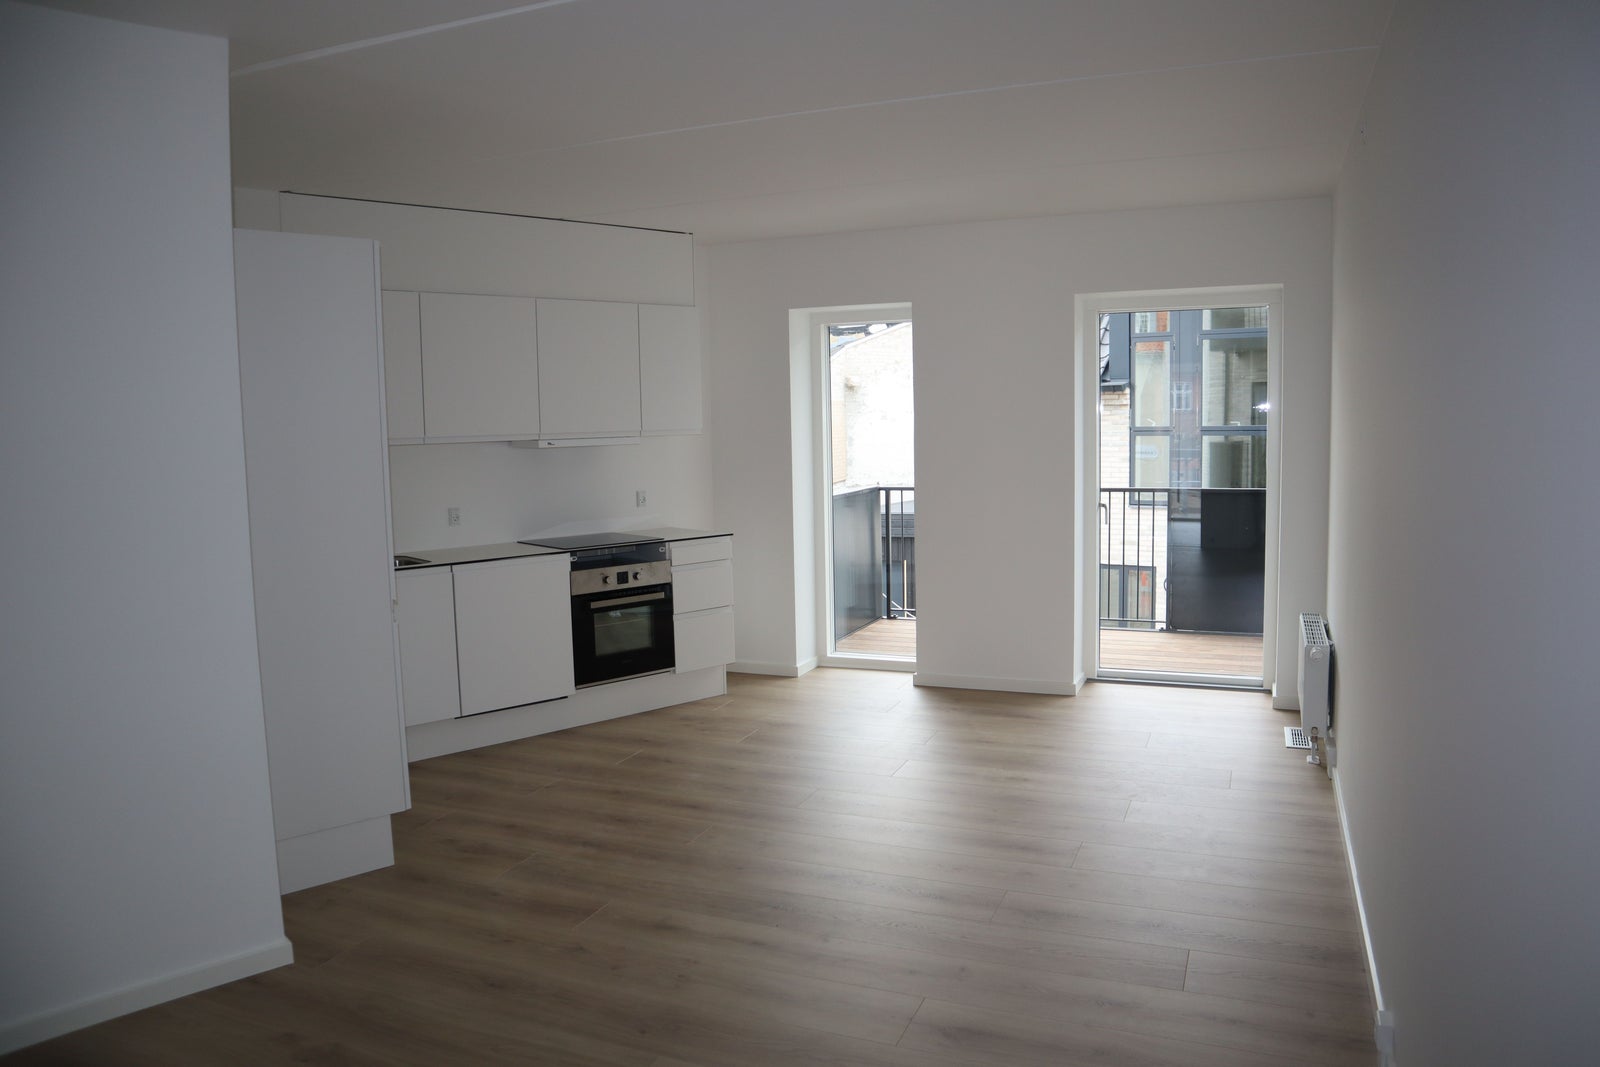 3 værelses lejlighed i Frederikssund 3600 på 71...